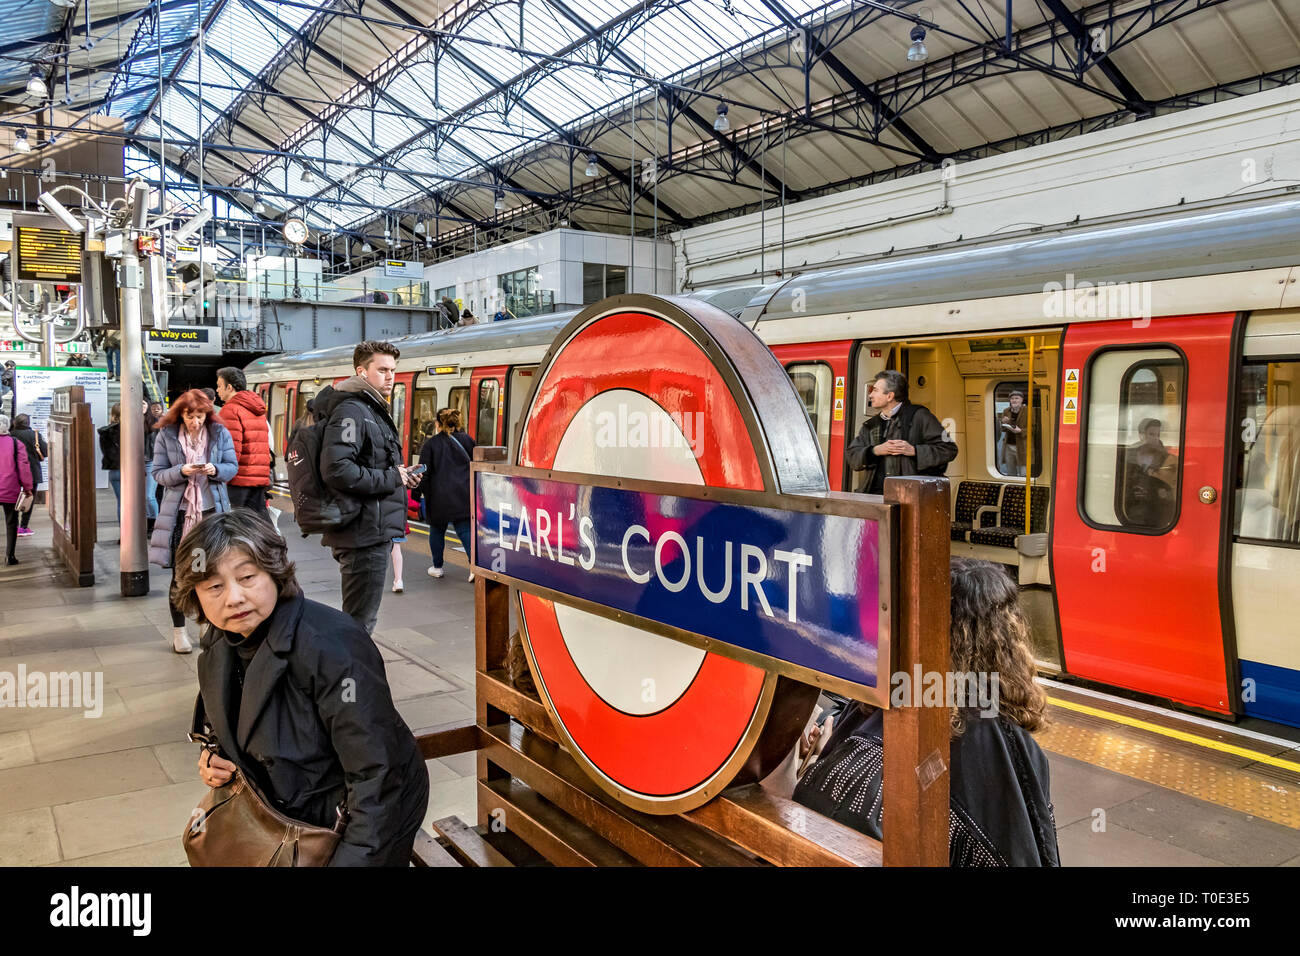 Personnes sur la plate-forme à la station de métro Earls court London, Londres, Royaume-Uni Banque D'Images